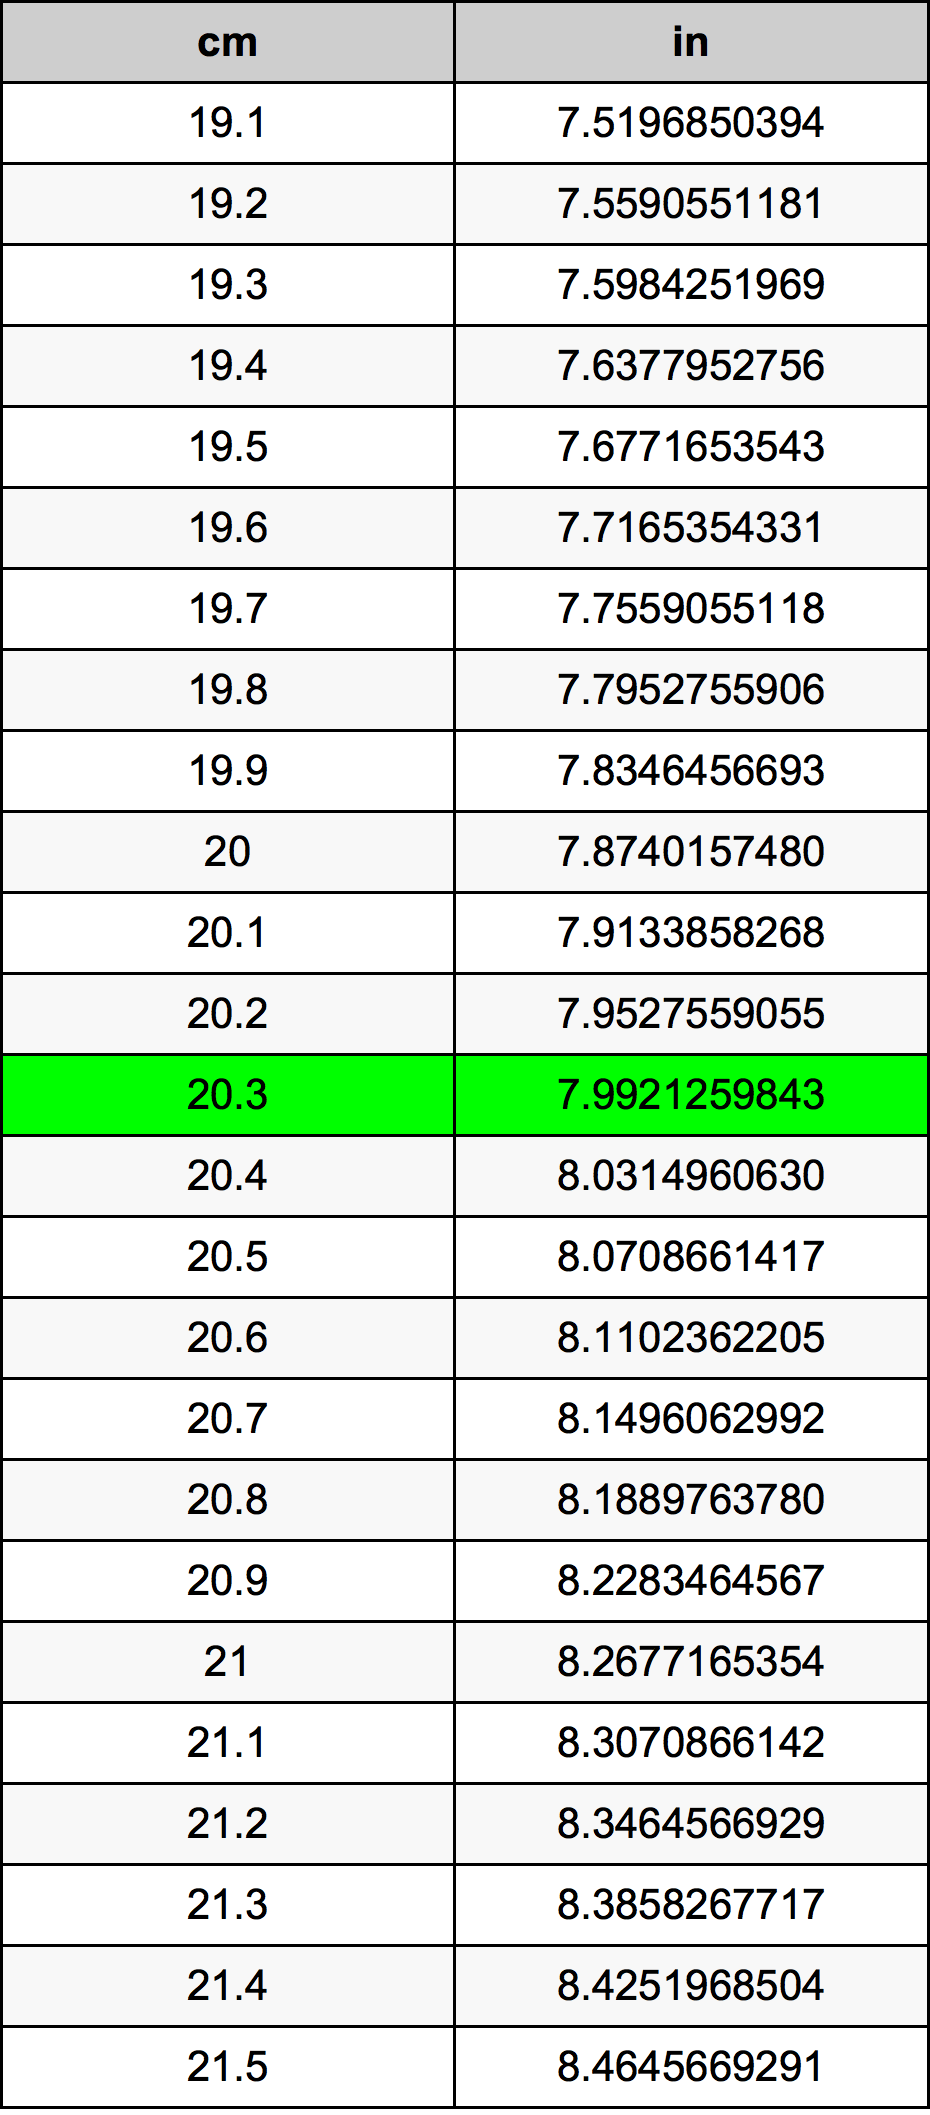 20.3 Centiméter átszámítási táblázat